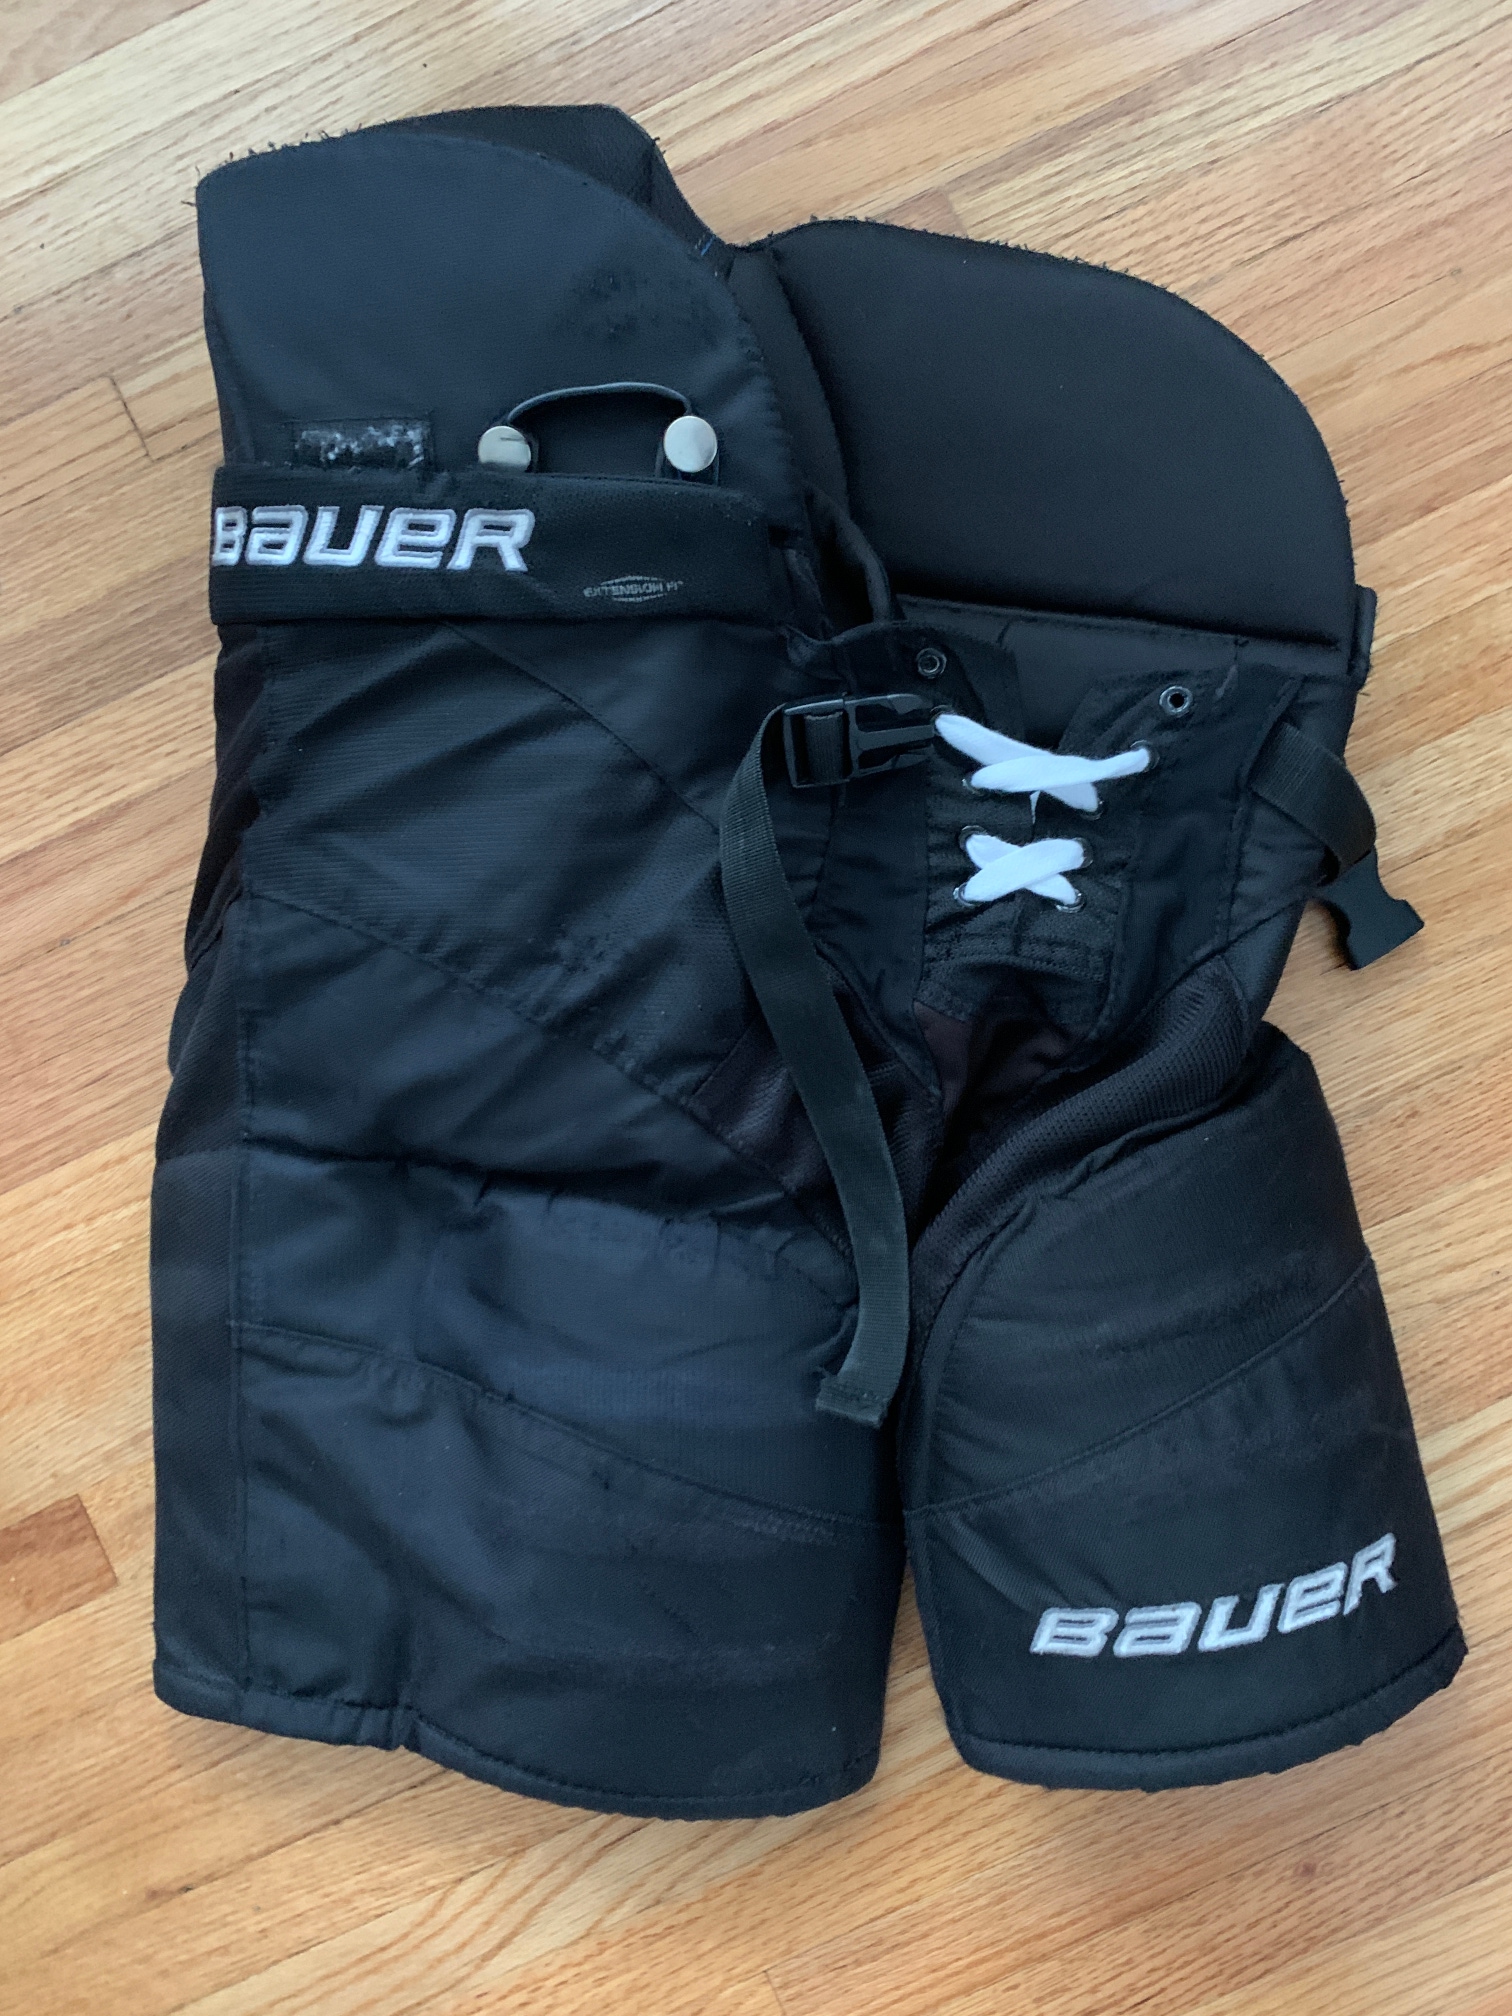 Bauer Nexus N8000 Jr. Hockey Pants